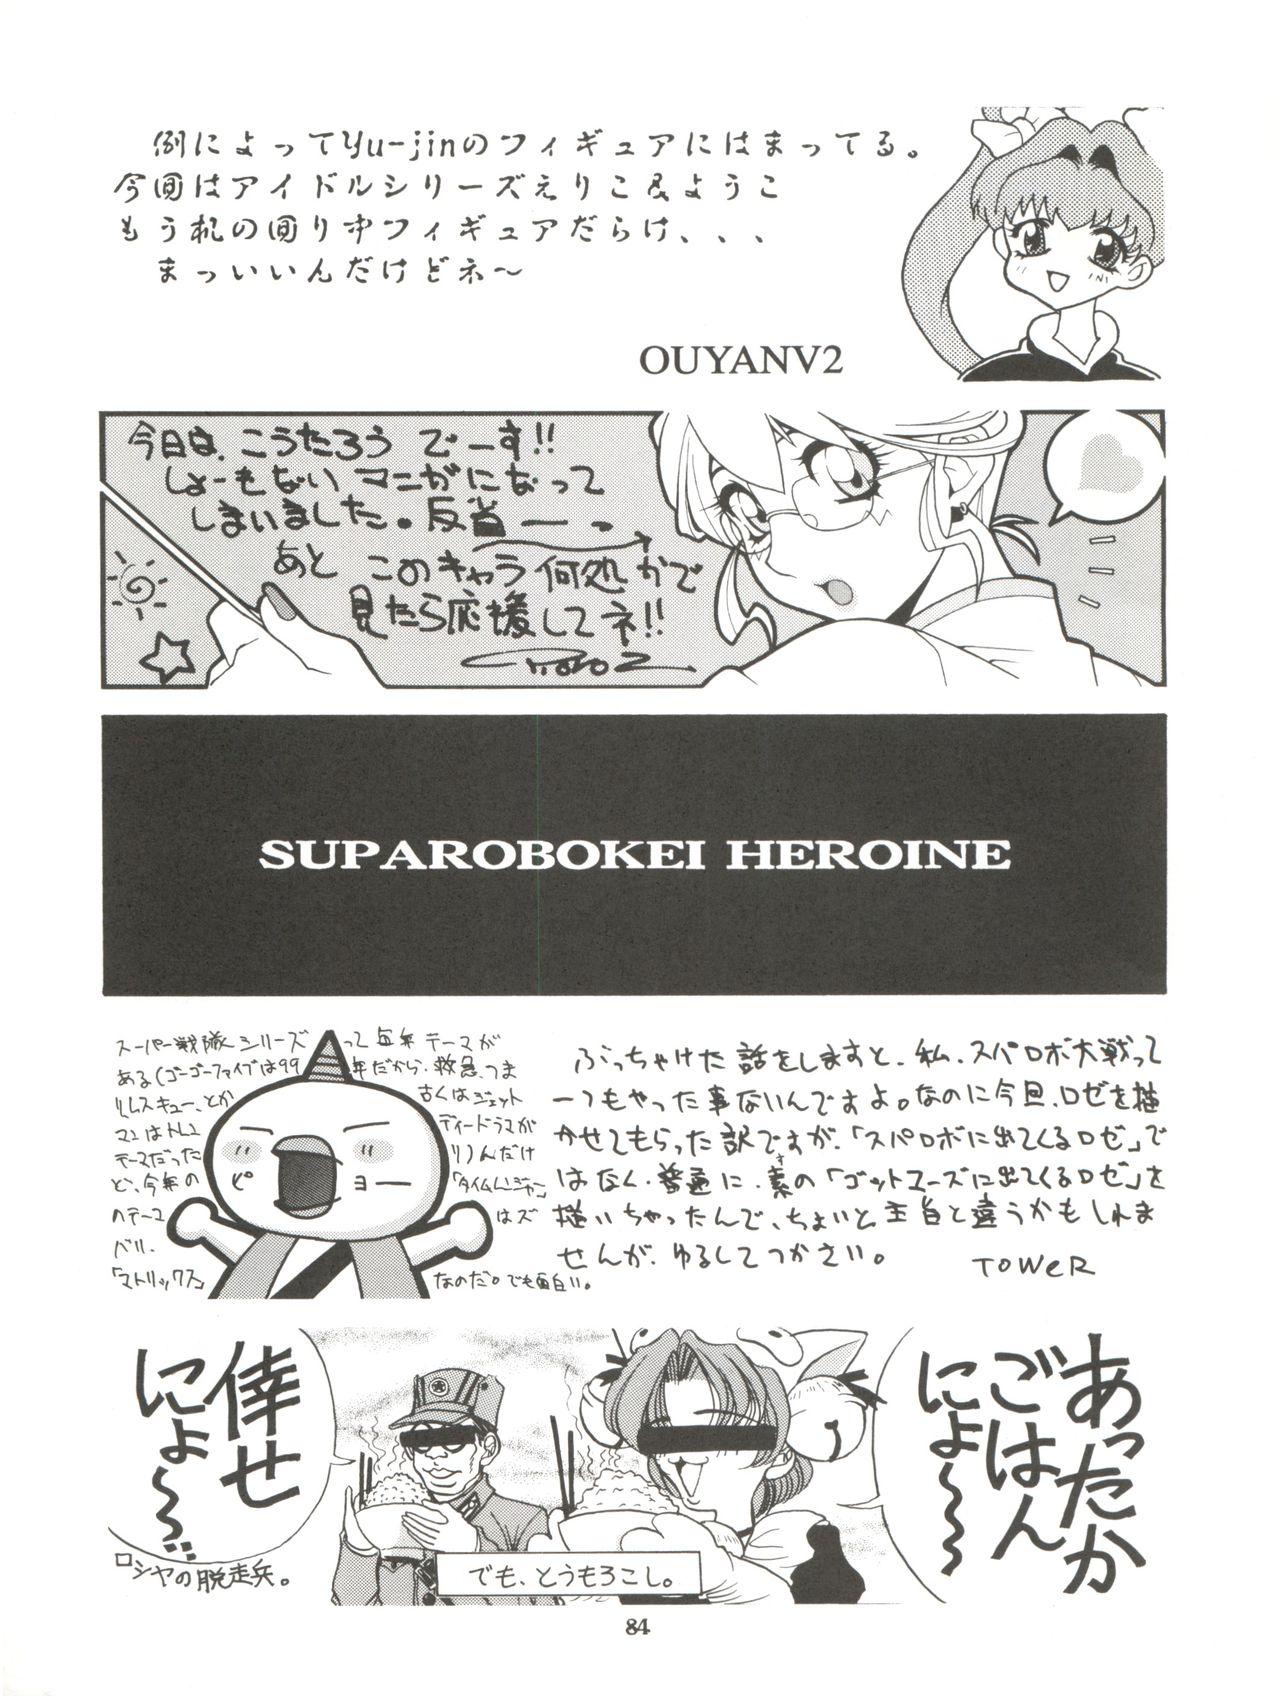 NEXT Climax Magazine 2 Suparobokei Heroine 82